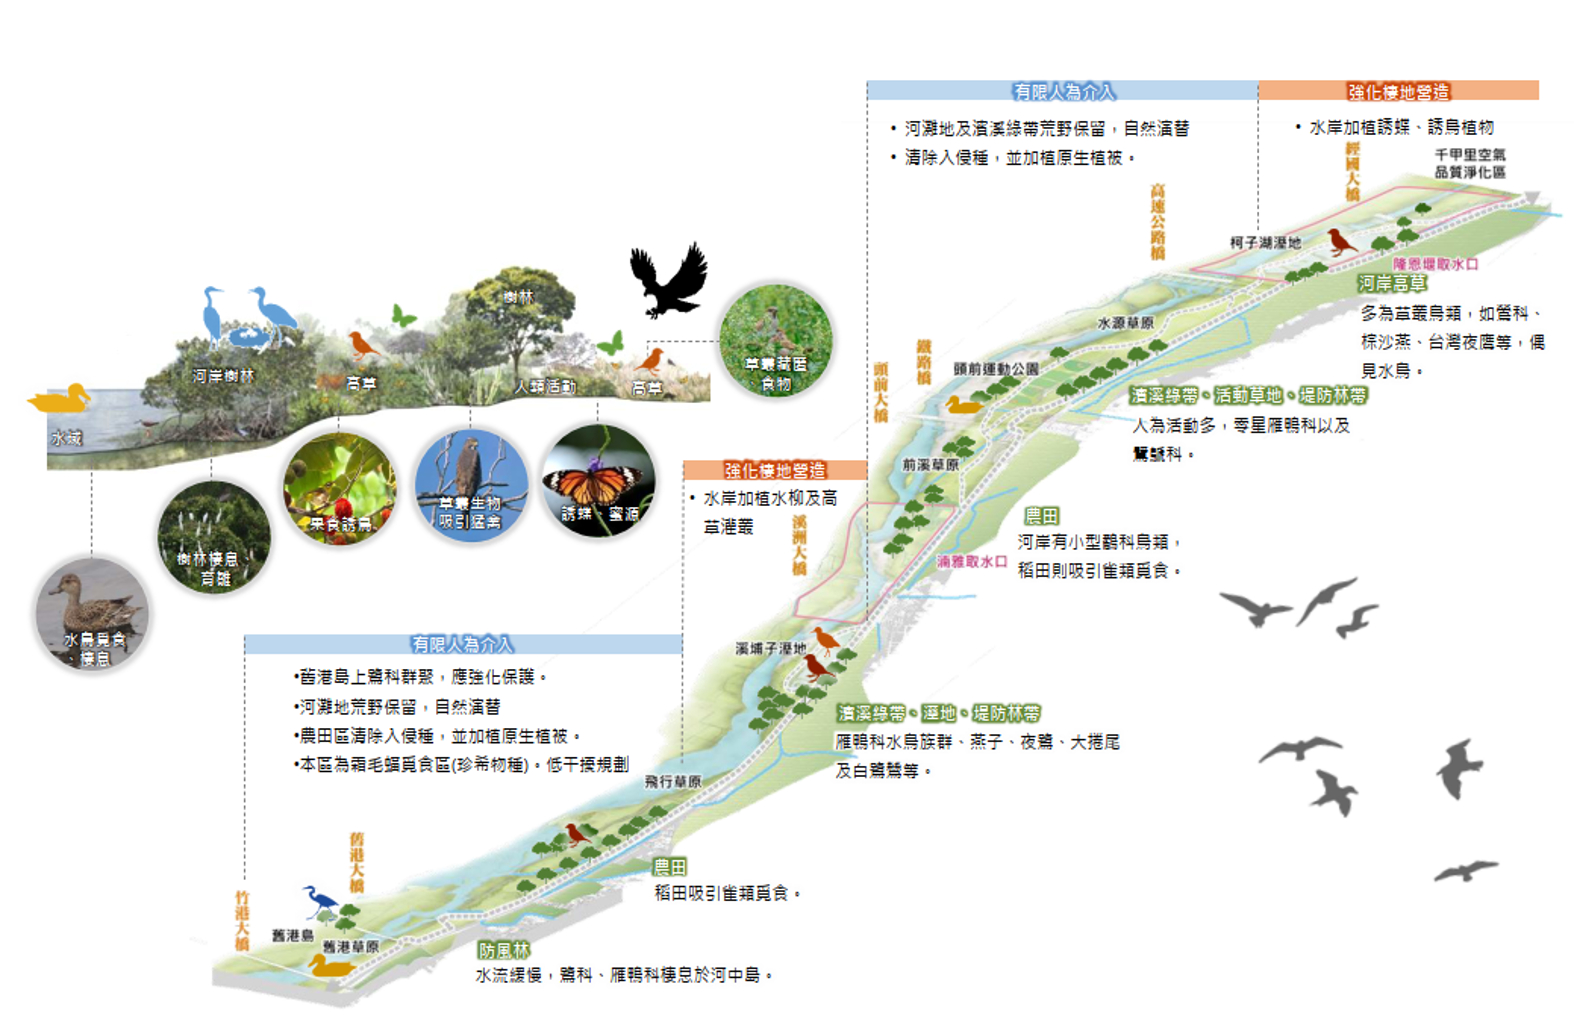 A3-1c 新竹左岸濱水廊道景觀營造計畫- 全線濱河自行車綠廊道景觀優化工程